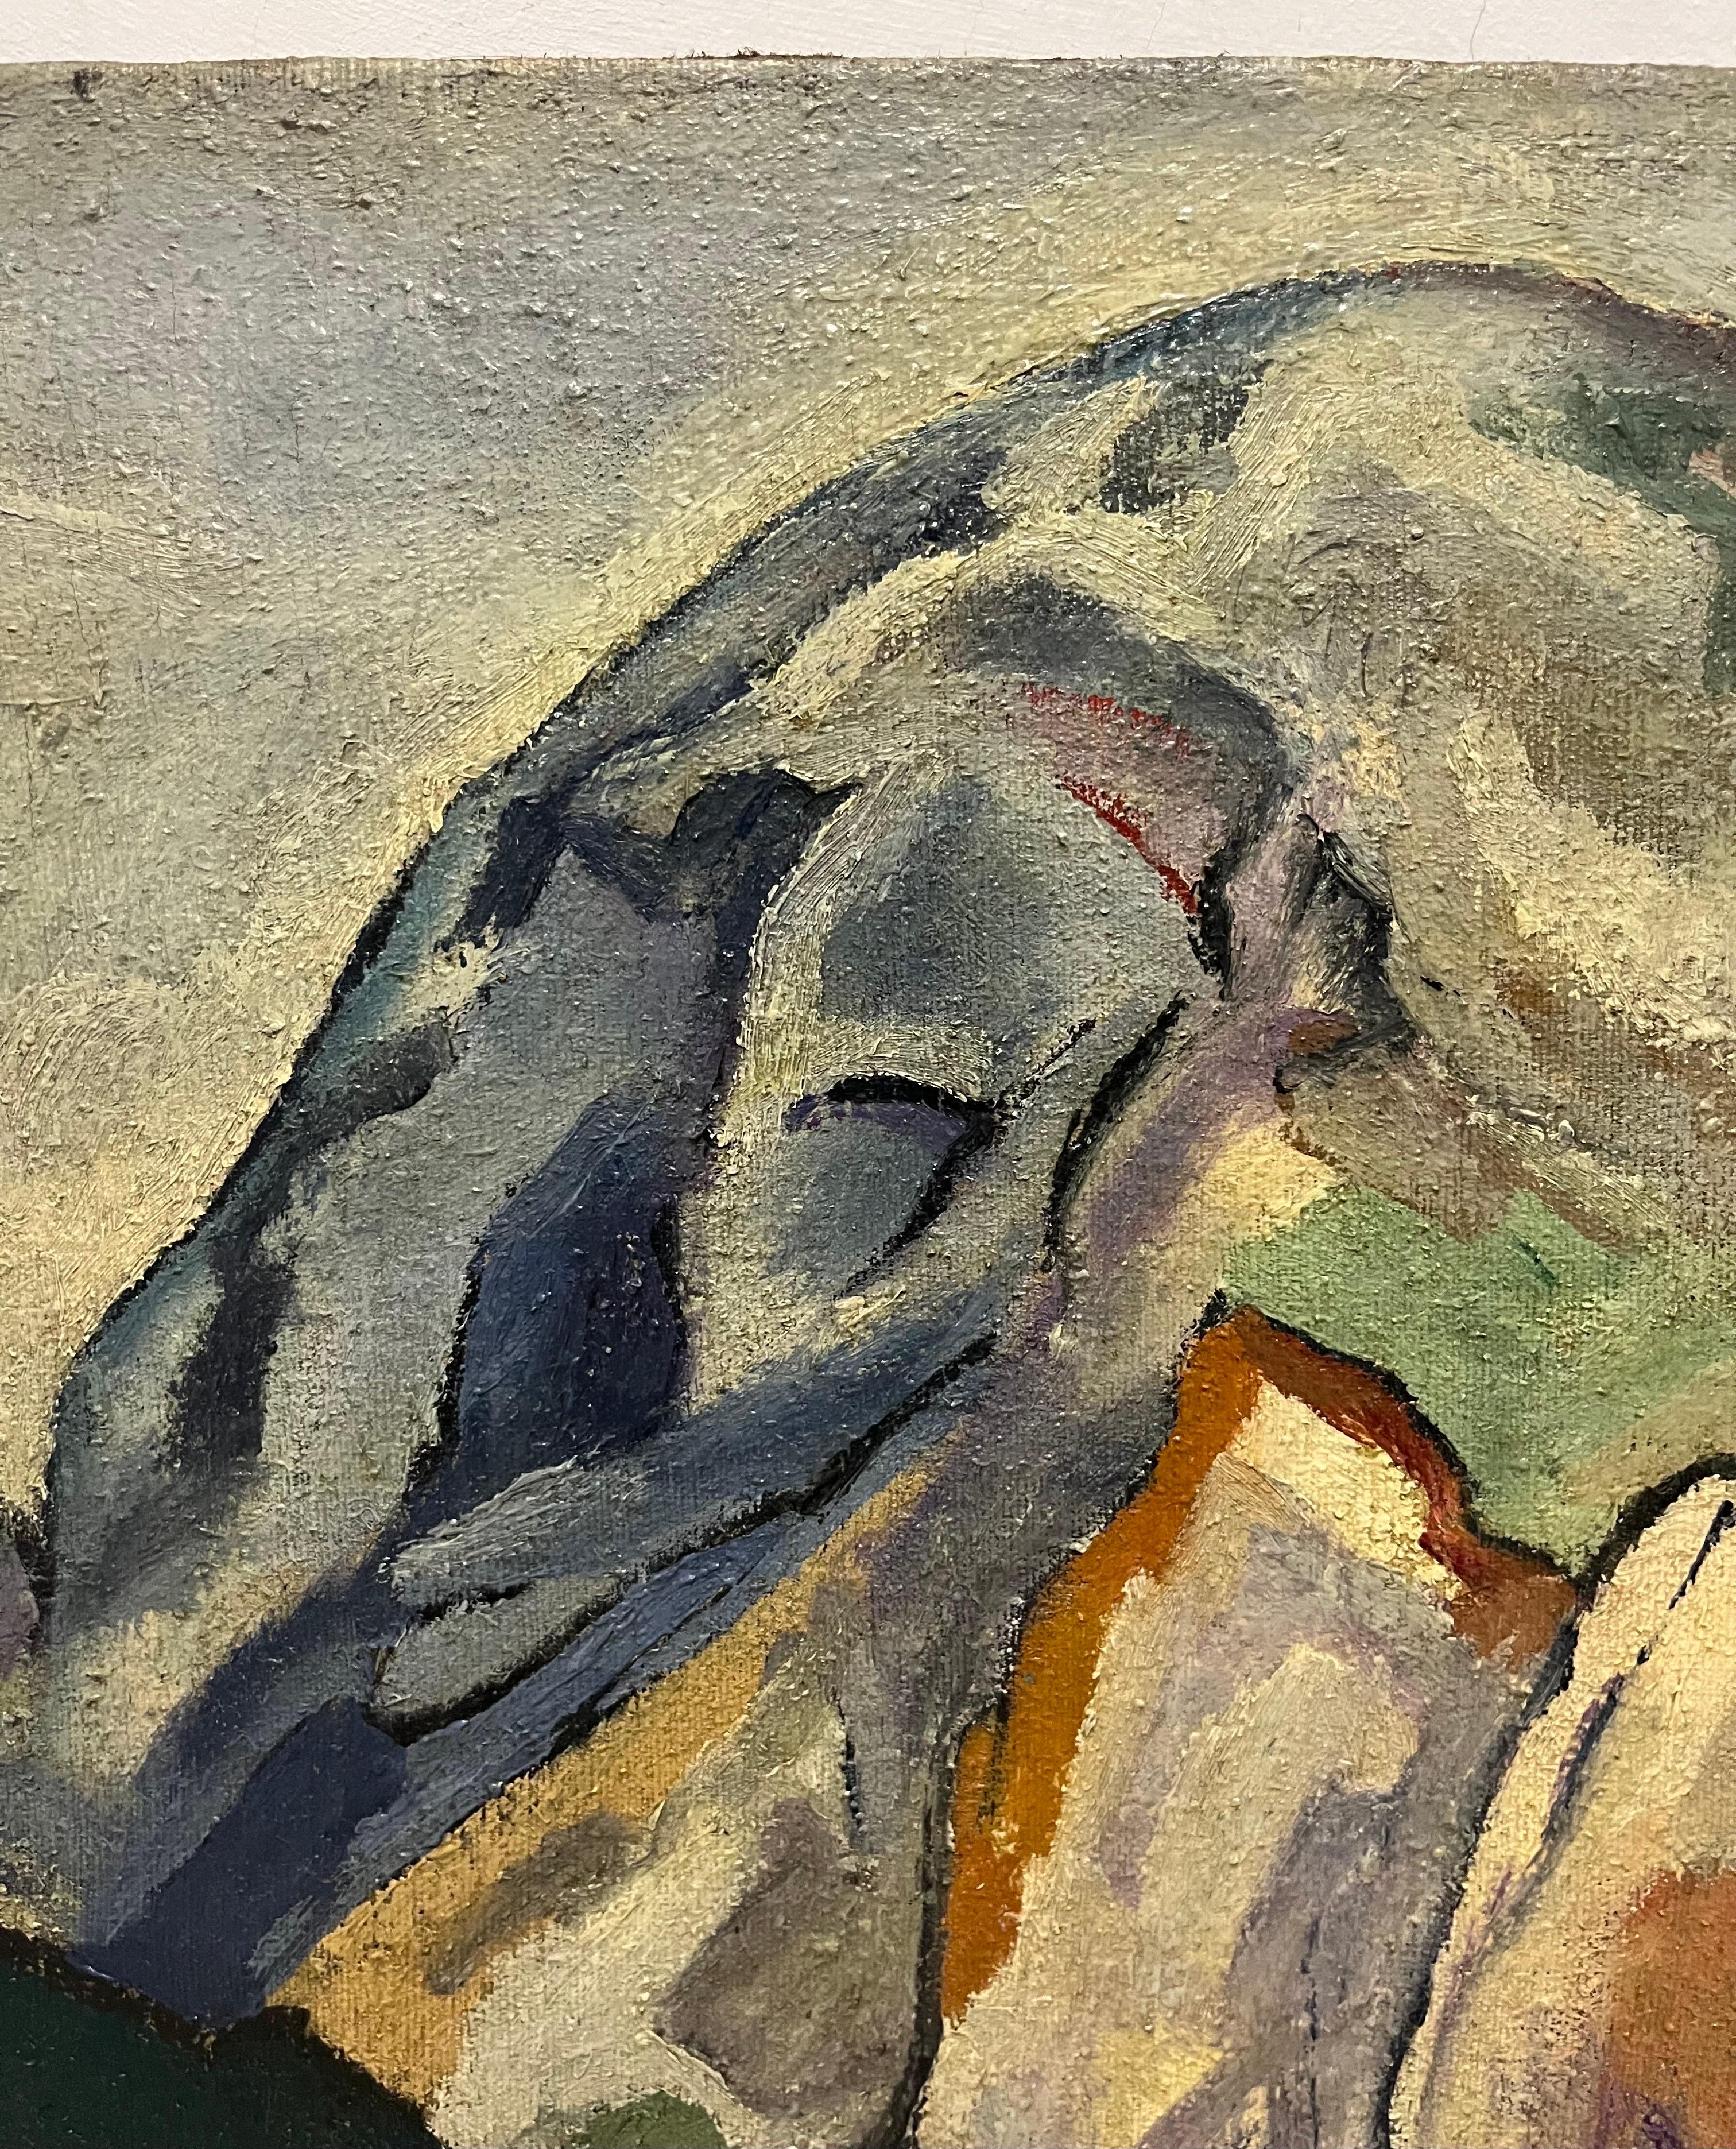 Vert, paysage
Edgardo CORBELLI (Turin, 1918 - 1989)

De la composition traditionnelle des années 30, la peinture de Corbelli aboutit à des résultats techniques et expressifs dominés par un signe impétueux assimilé, entre autres, par Oskar Kokoschka